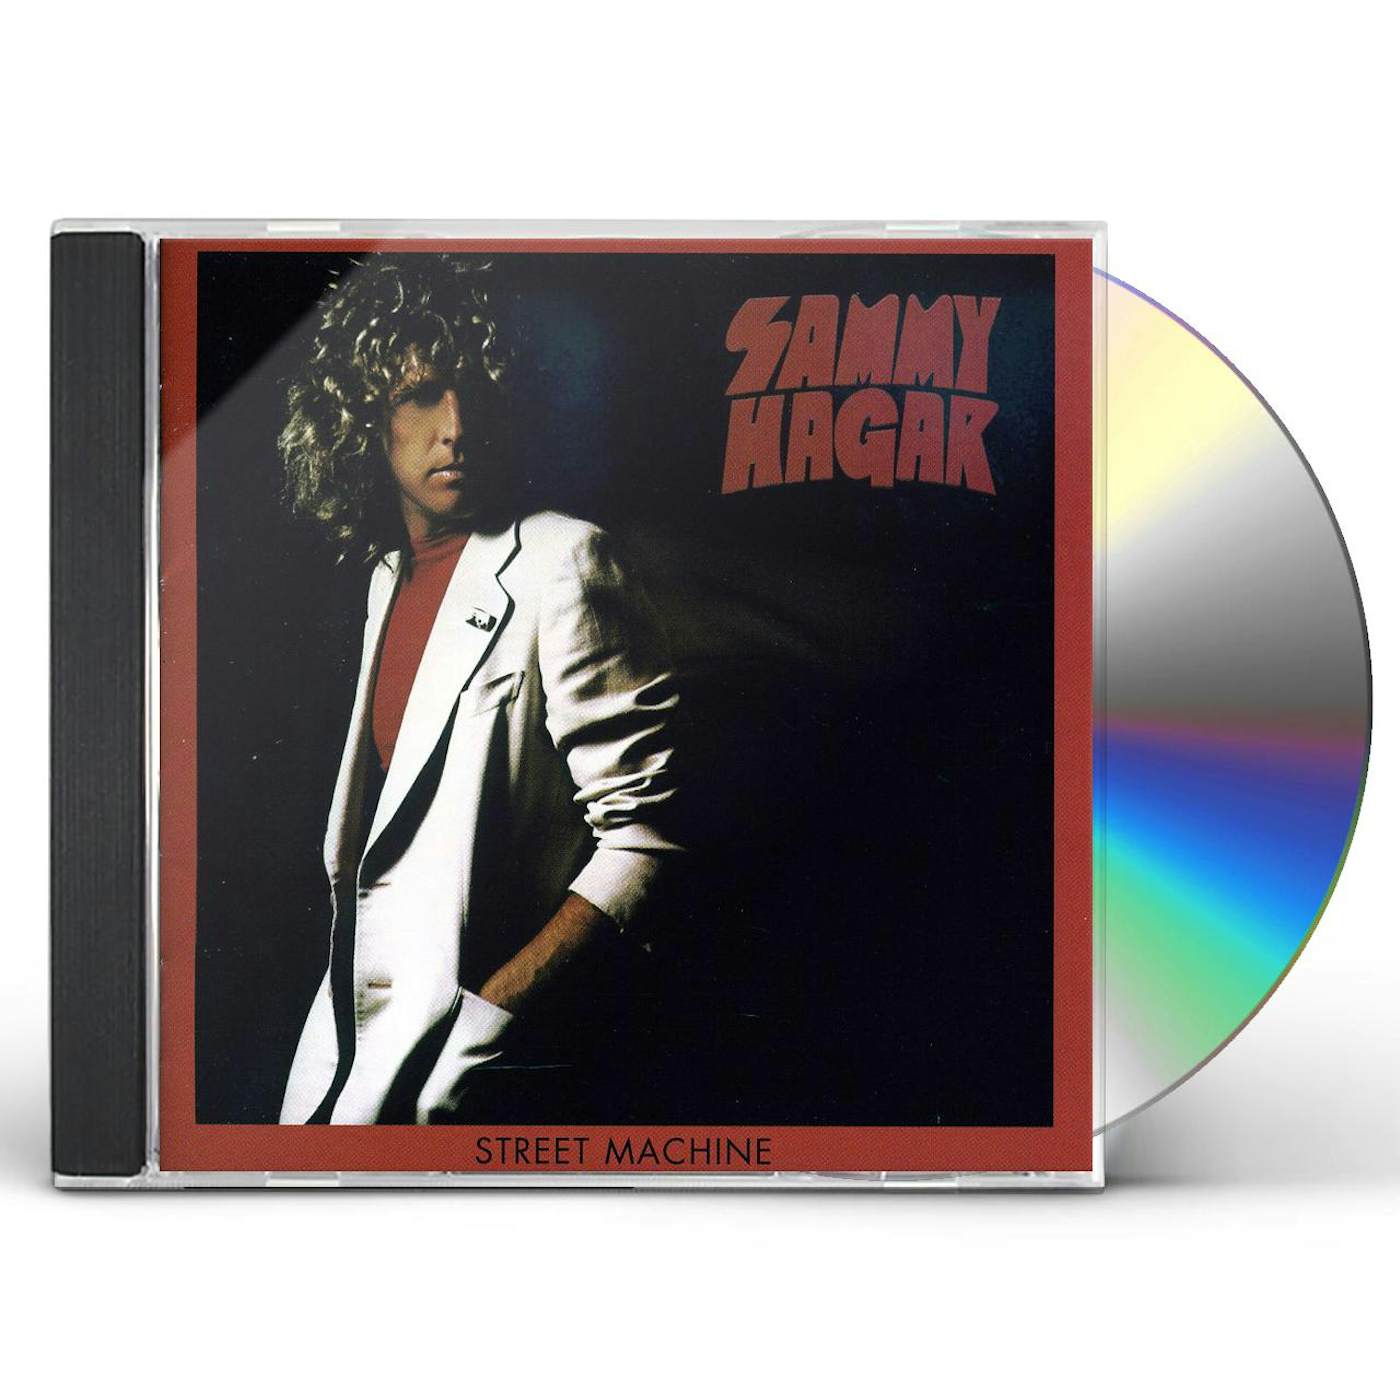 Sammy Hagar STREET MACHINE CD